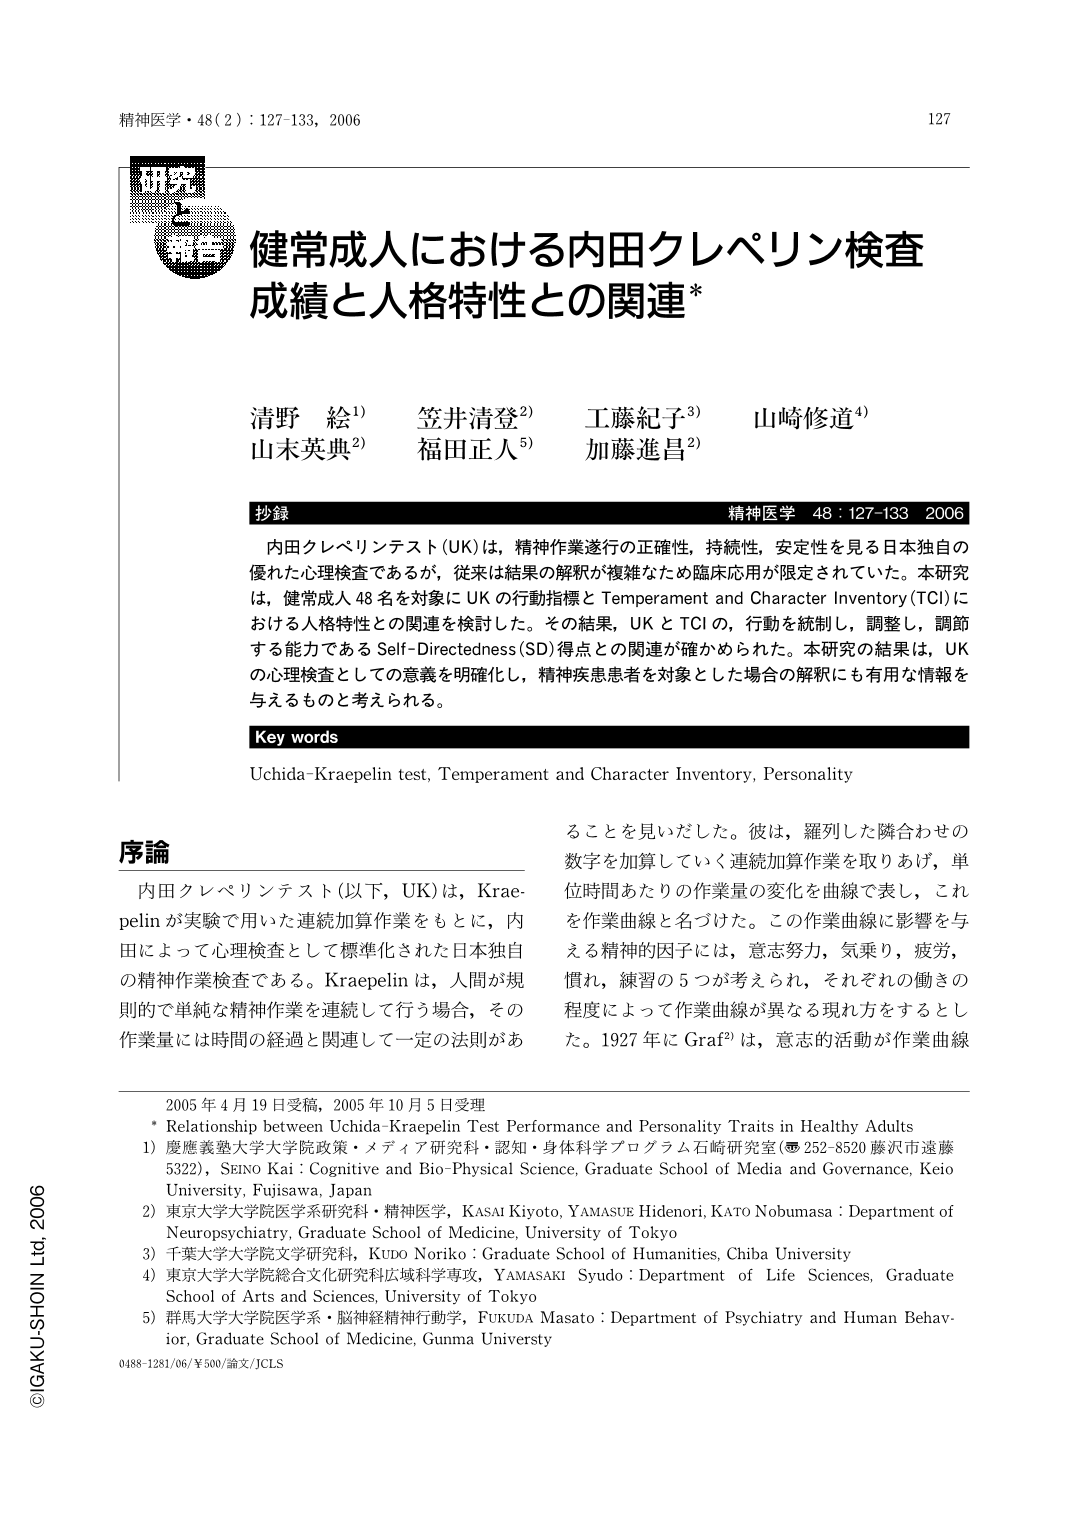 健常成人における内田クレペリン検査成績と人格特性との関連 (精神医学 